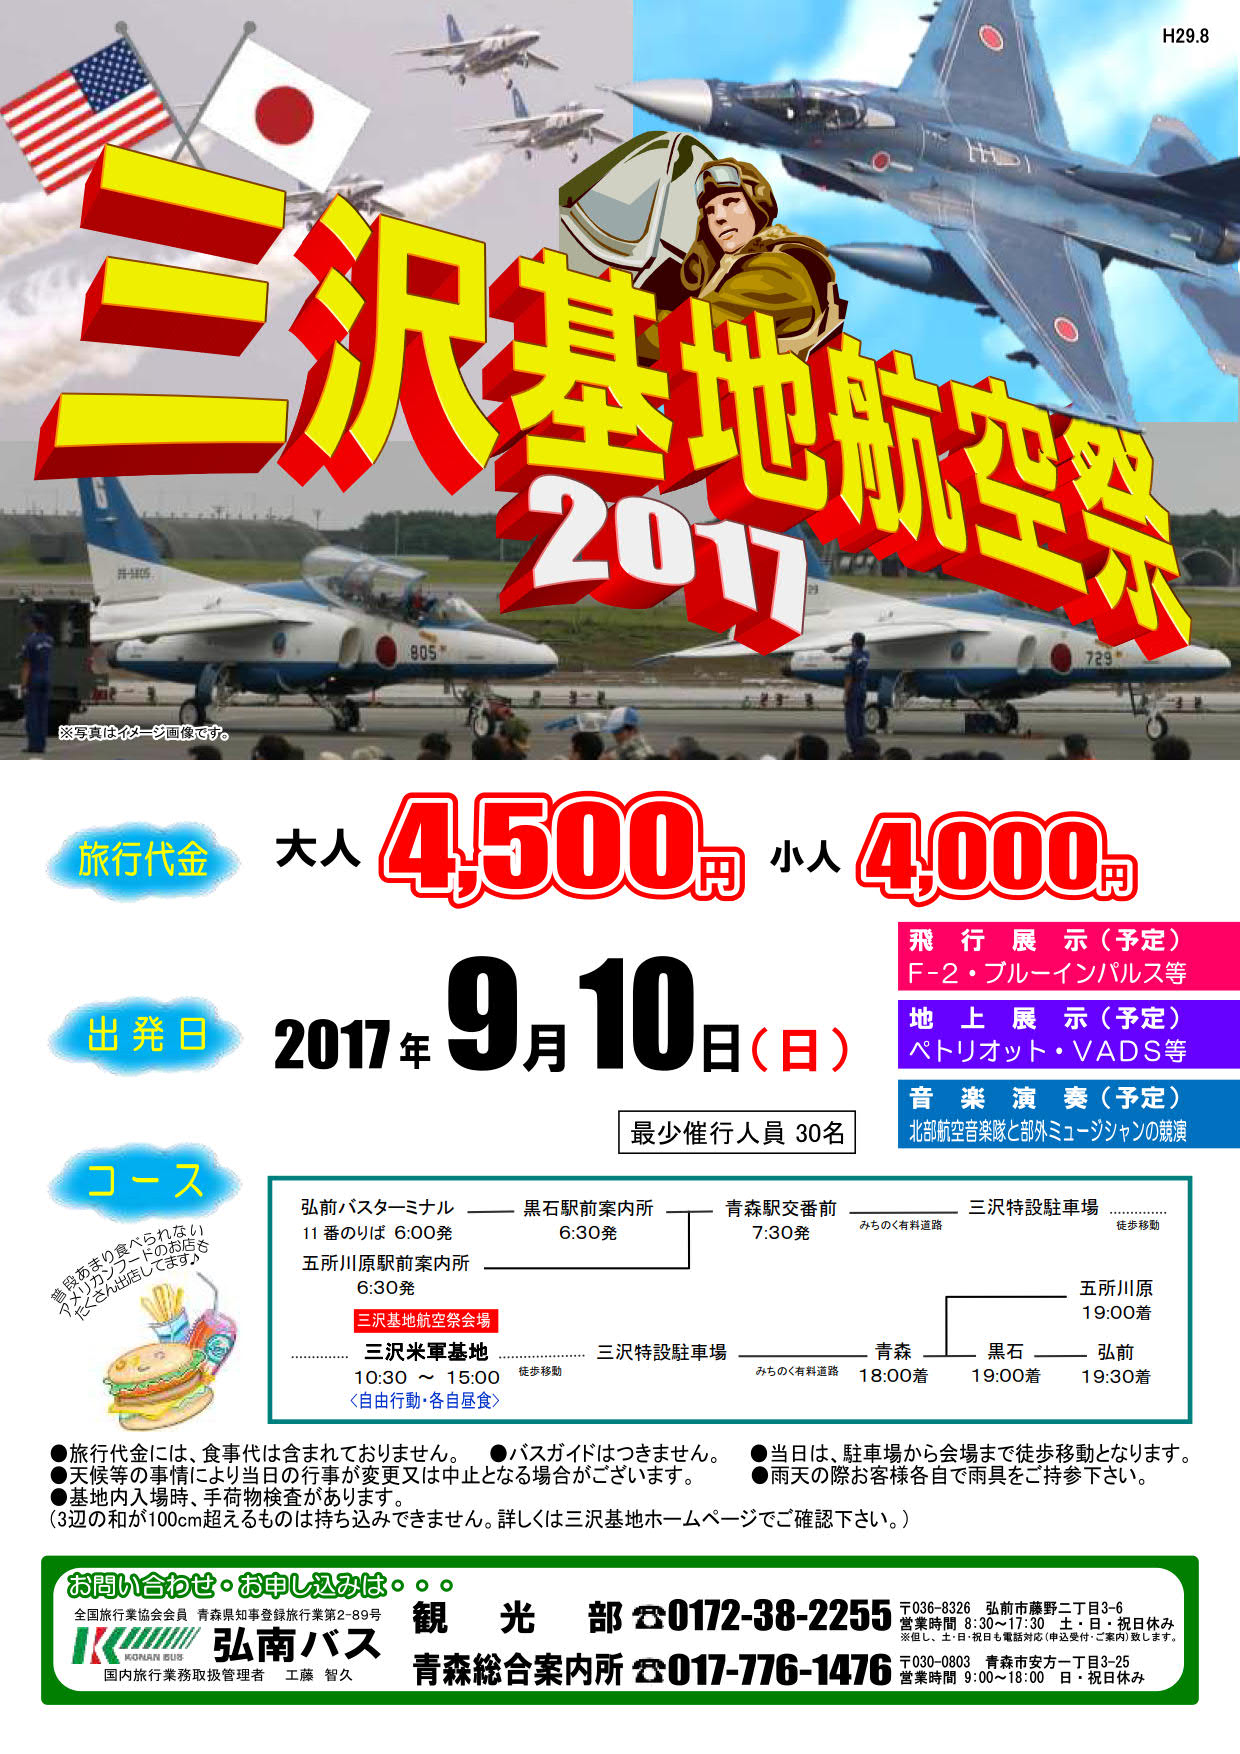 三沢基地航空祭2017